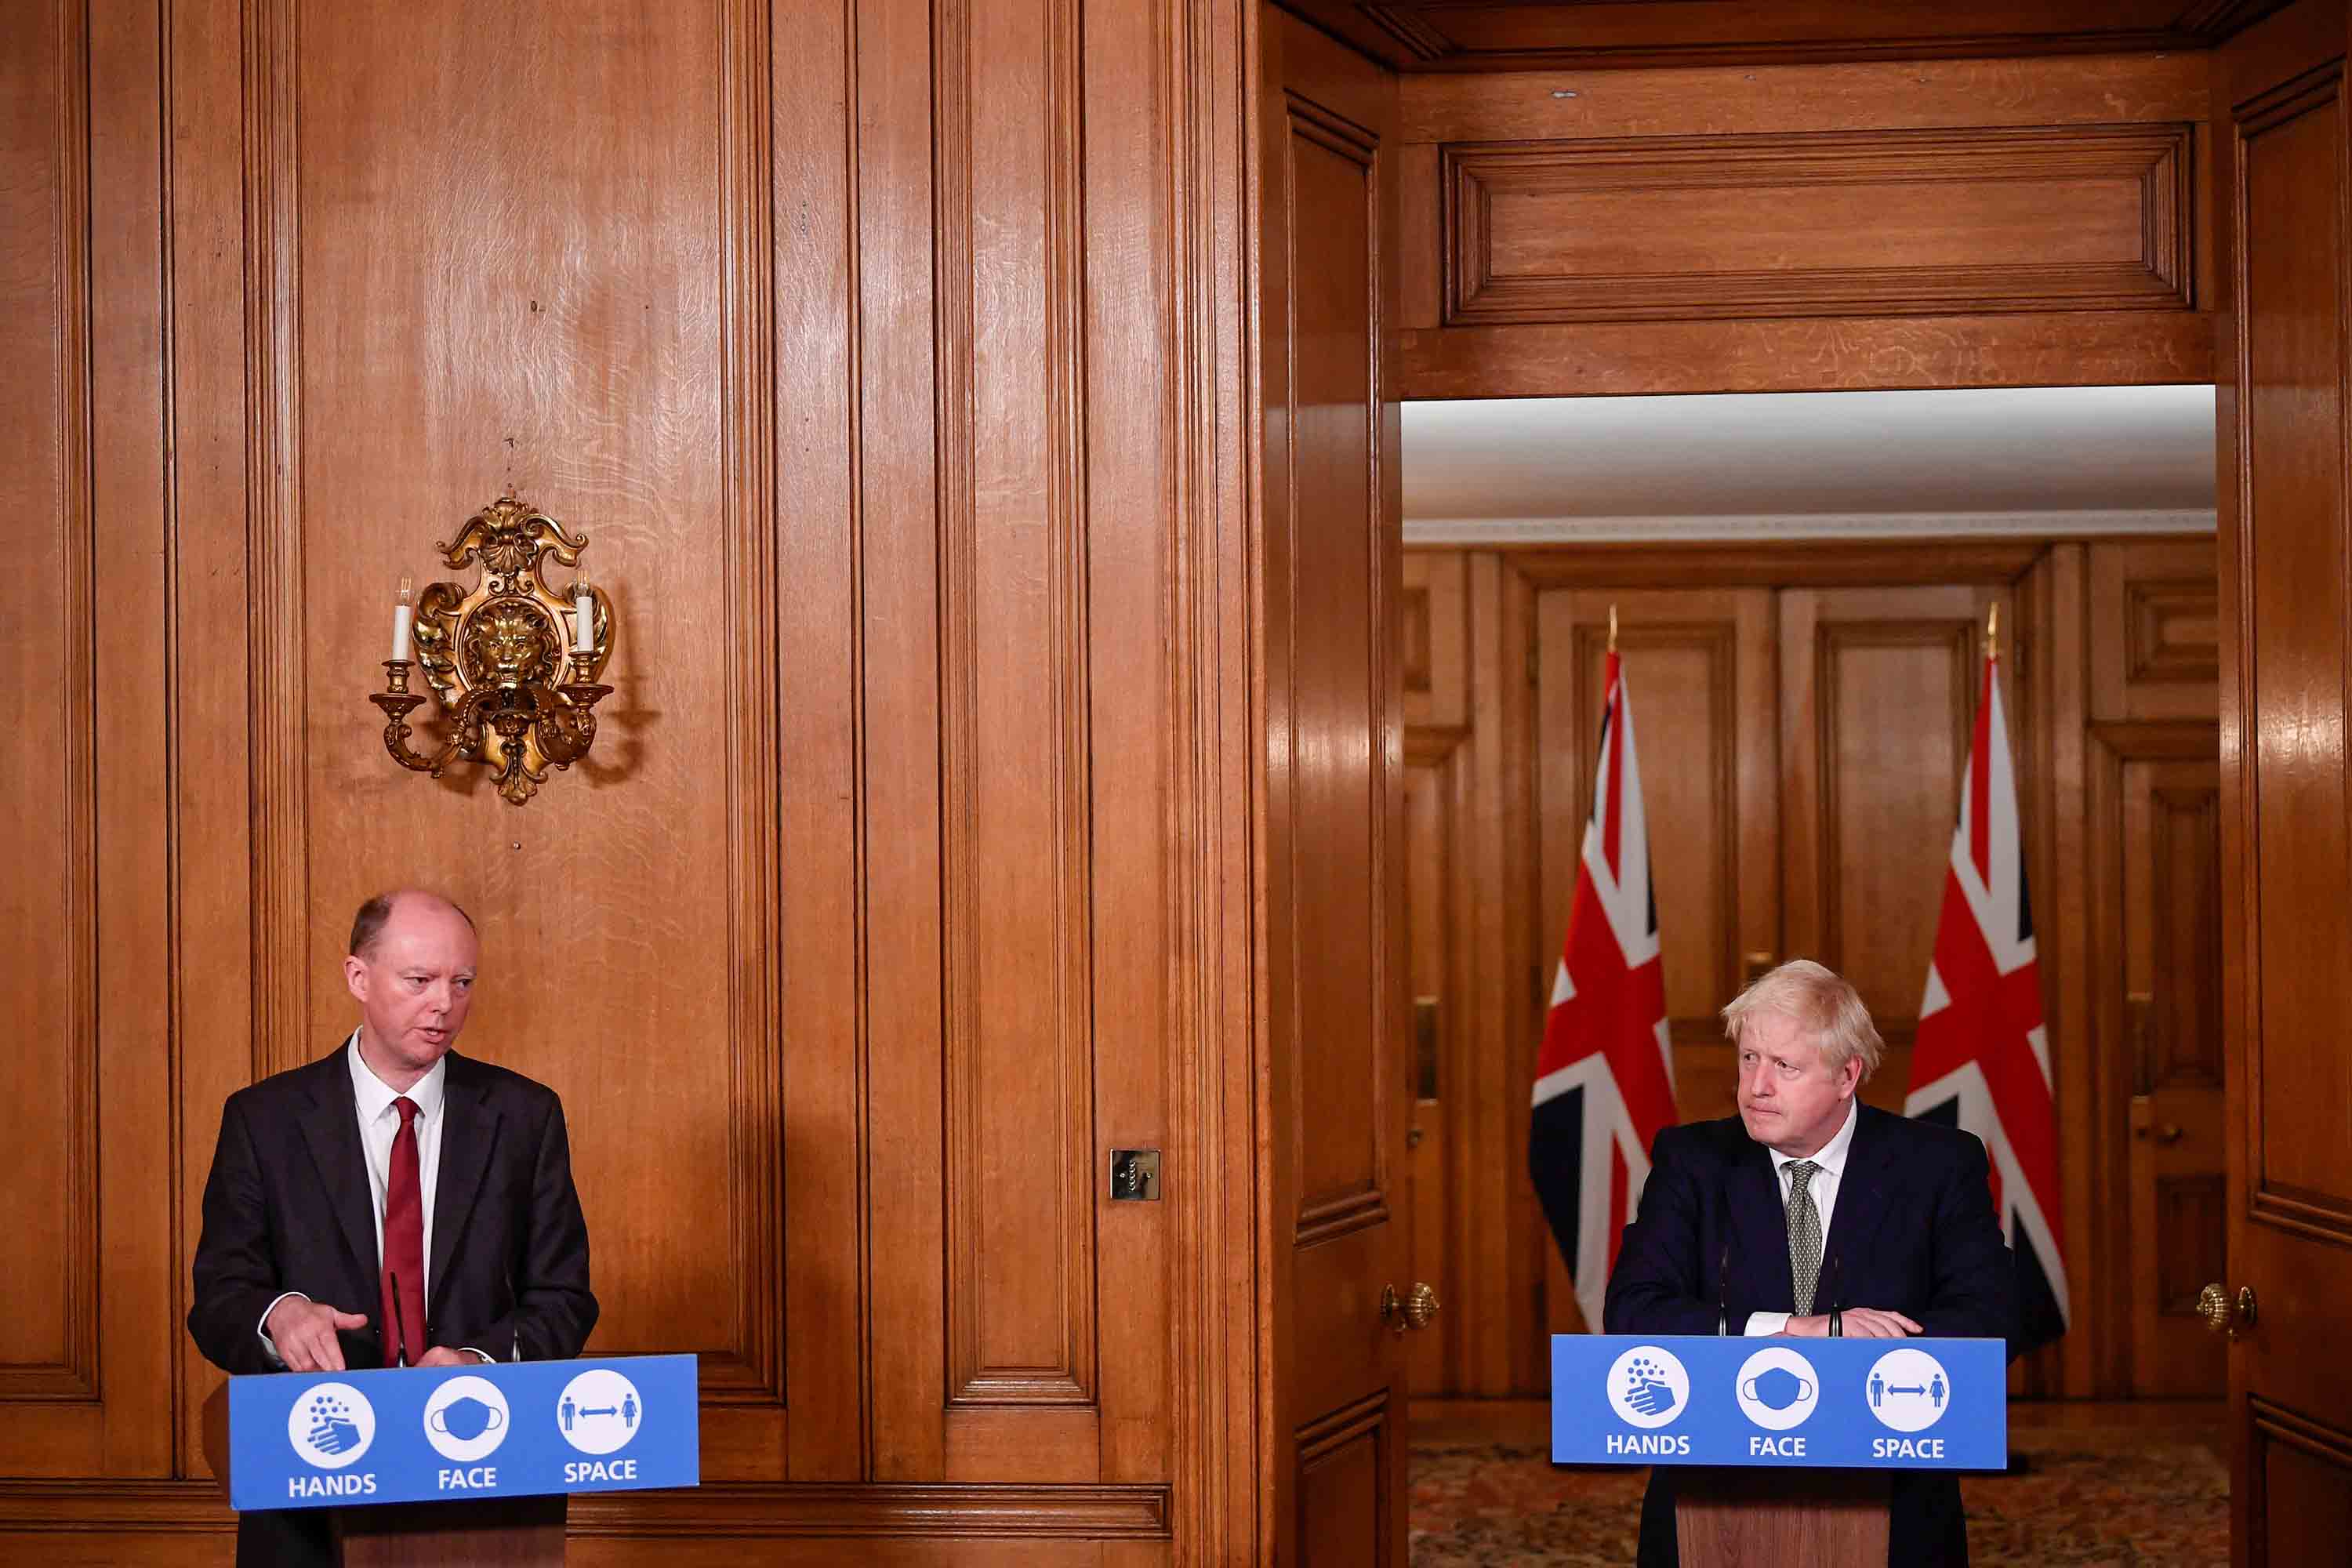 رئيس الوزراء بوريس جونسون ، إلى اليمين ، ينظر إلى منصب كبير المسؤولين الطبيين في إنجلترا ، يتحدث كريس ويتي خلال إحاطة افتراضية تحدد قواعد Covid-19 الجديدة ، في داونينج ستريت في لندن ، في 12 أكتوبر.